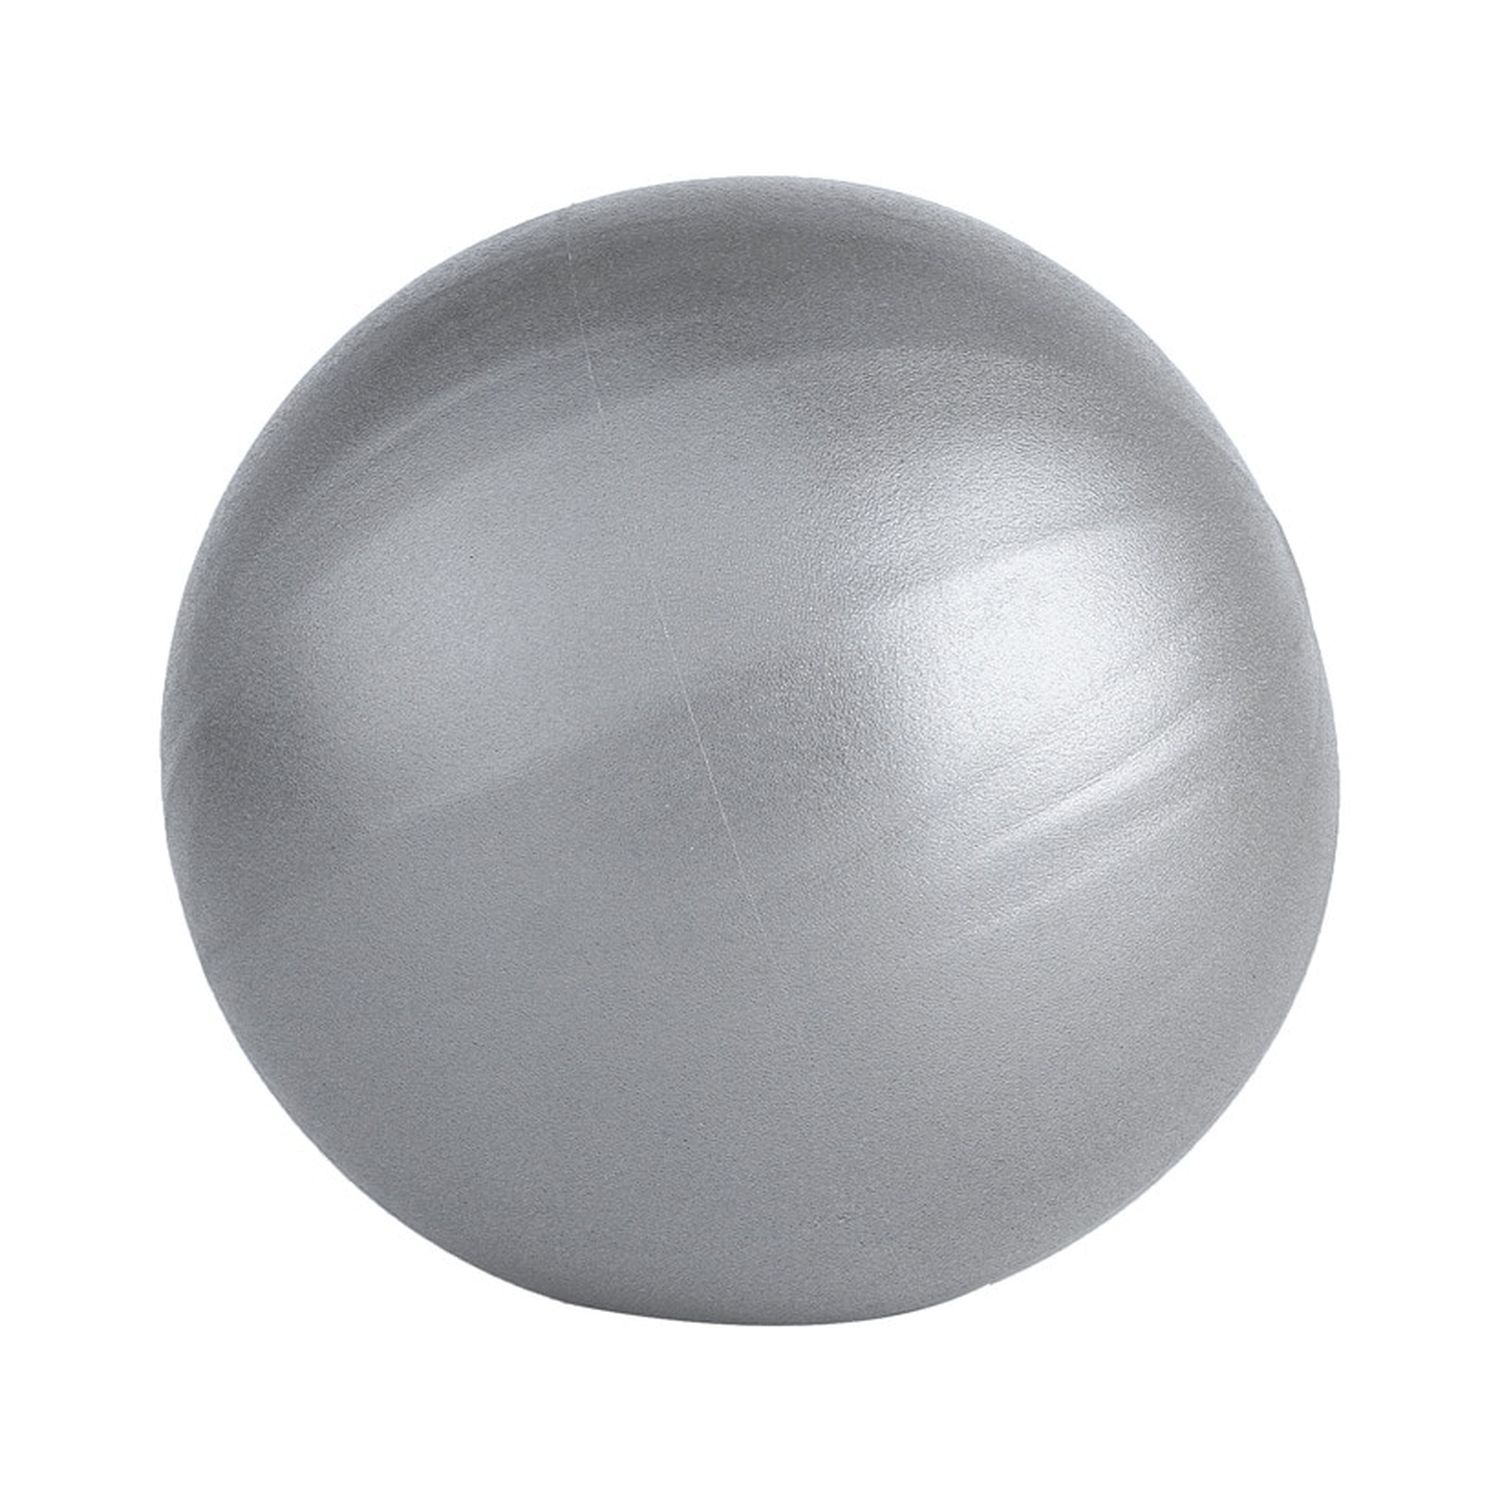 Мяч для йоги и пилатеса Beroma с антивзрывным эффектом 20 см серый - фото 1